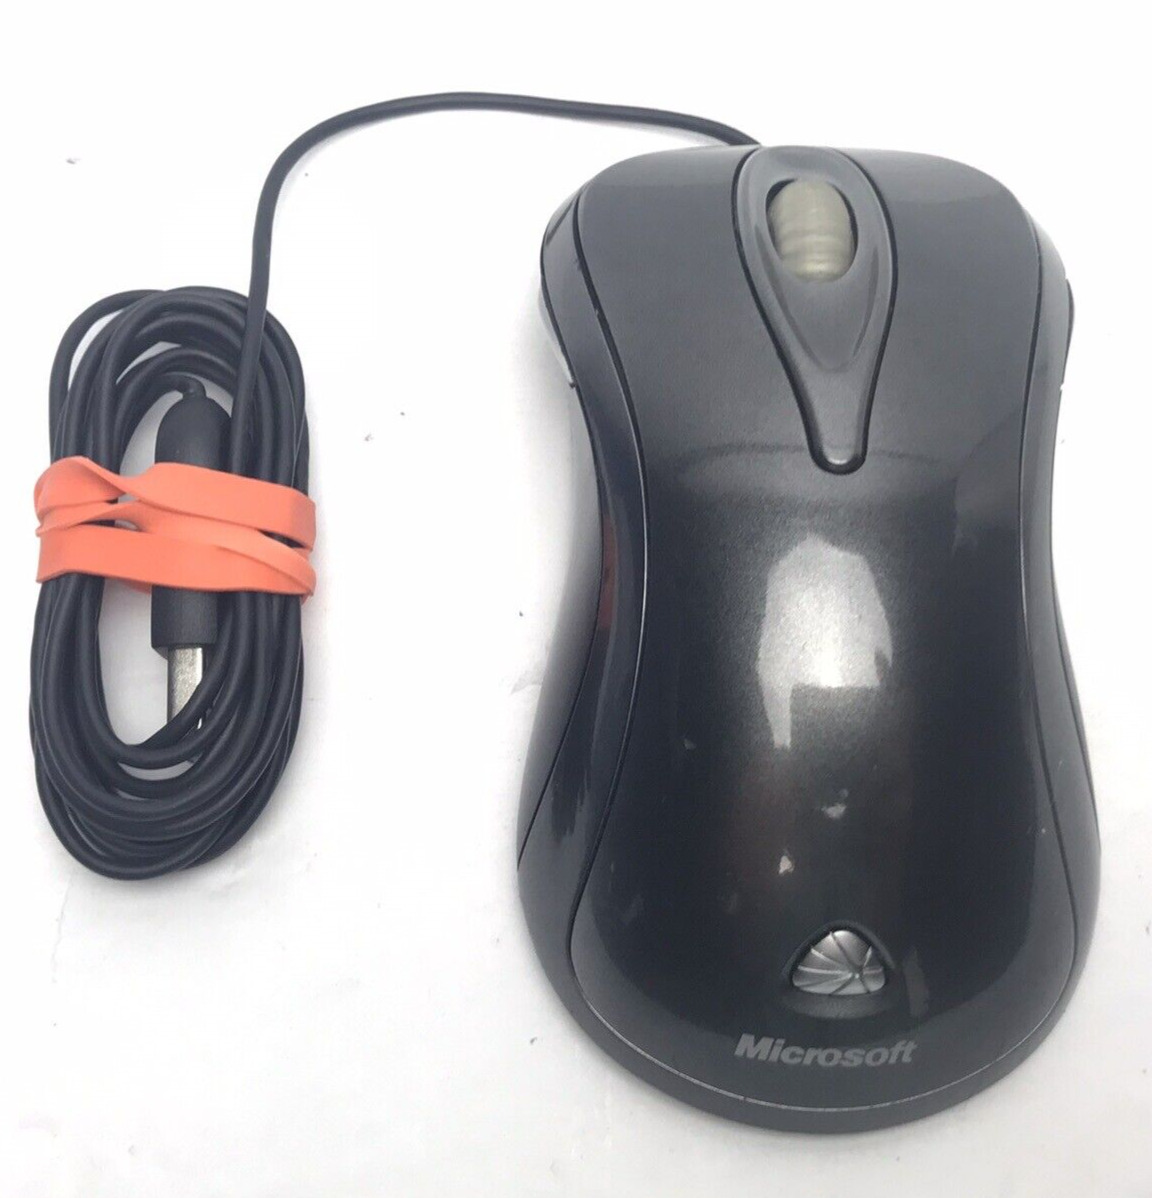 Vintage Microsoft Laser Mouse 6000 v1.0 Model 1055 USB Wired